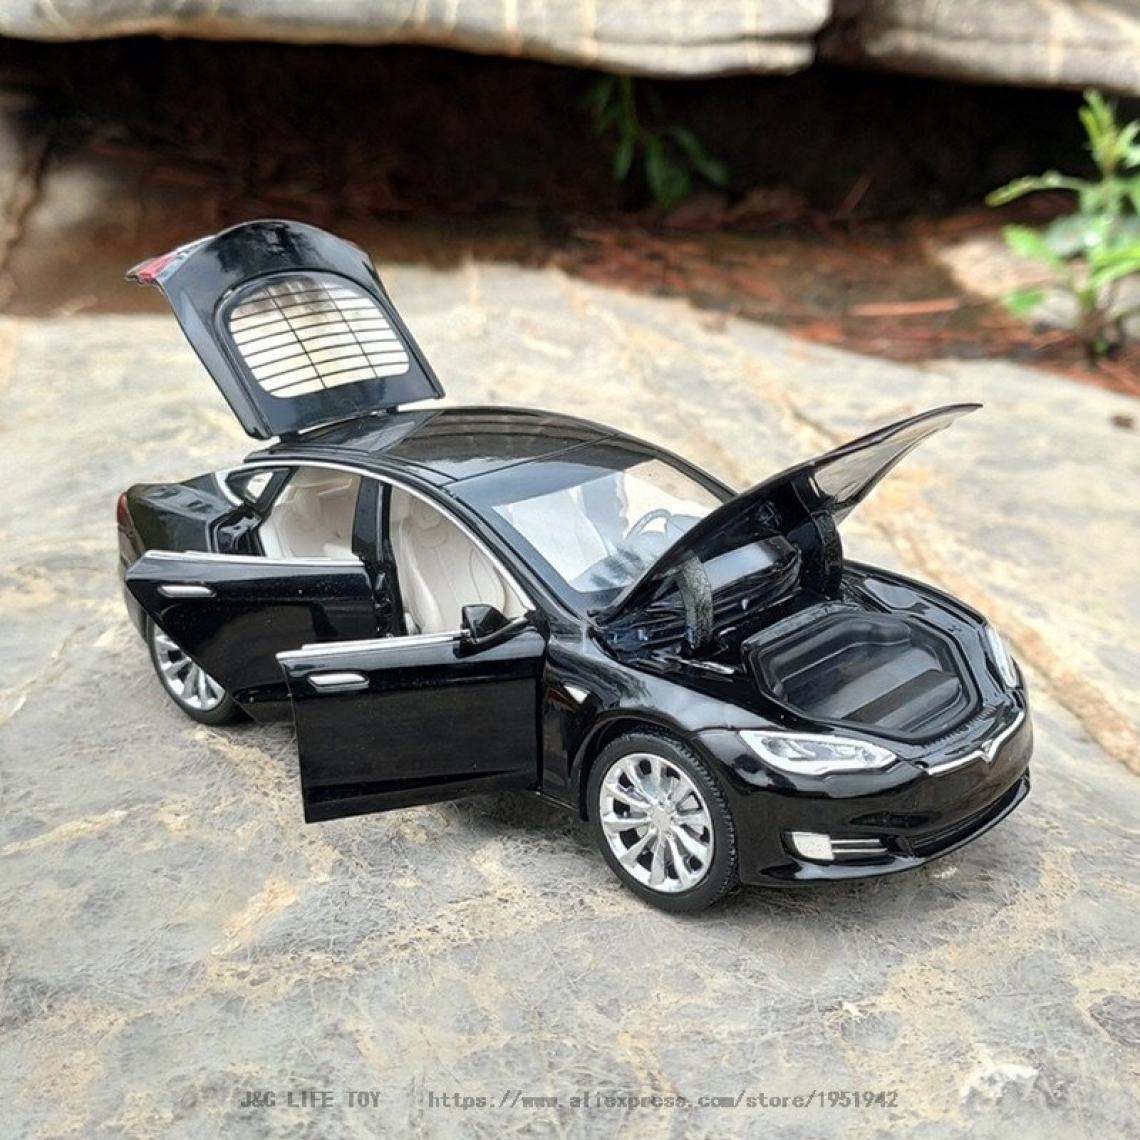 Universal - Nouveauté 1: 32 Tesla modèle modèle modèle moulage sous pression ; jouet voiture jouet voiture livraison gratuite jouet enfant cadeau jouet garçon | moulage sous pression avec jouets(Le noir) - Voitures